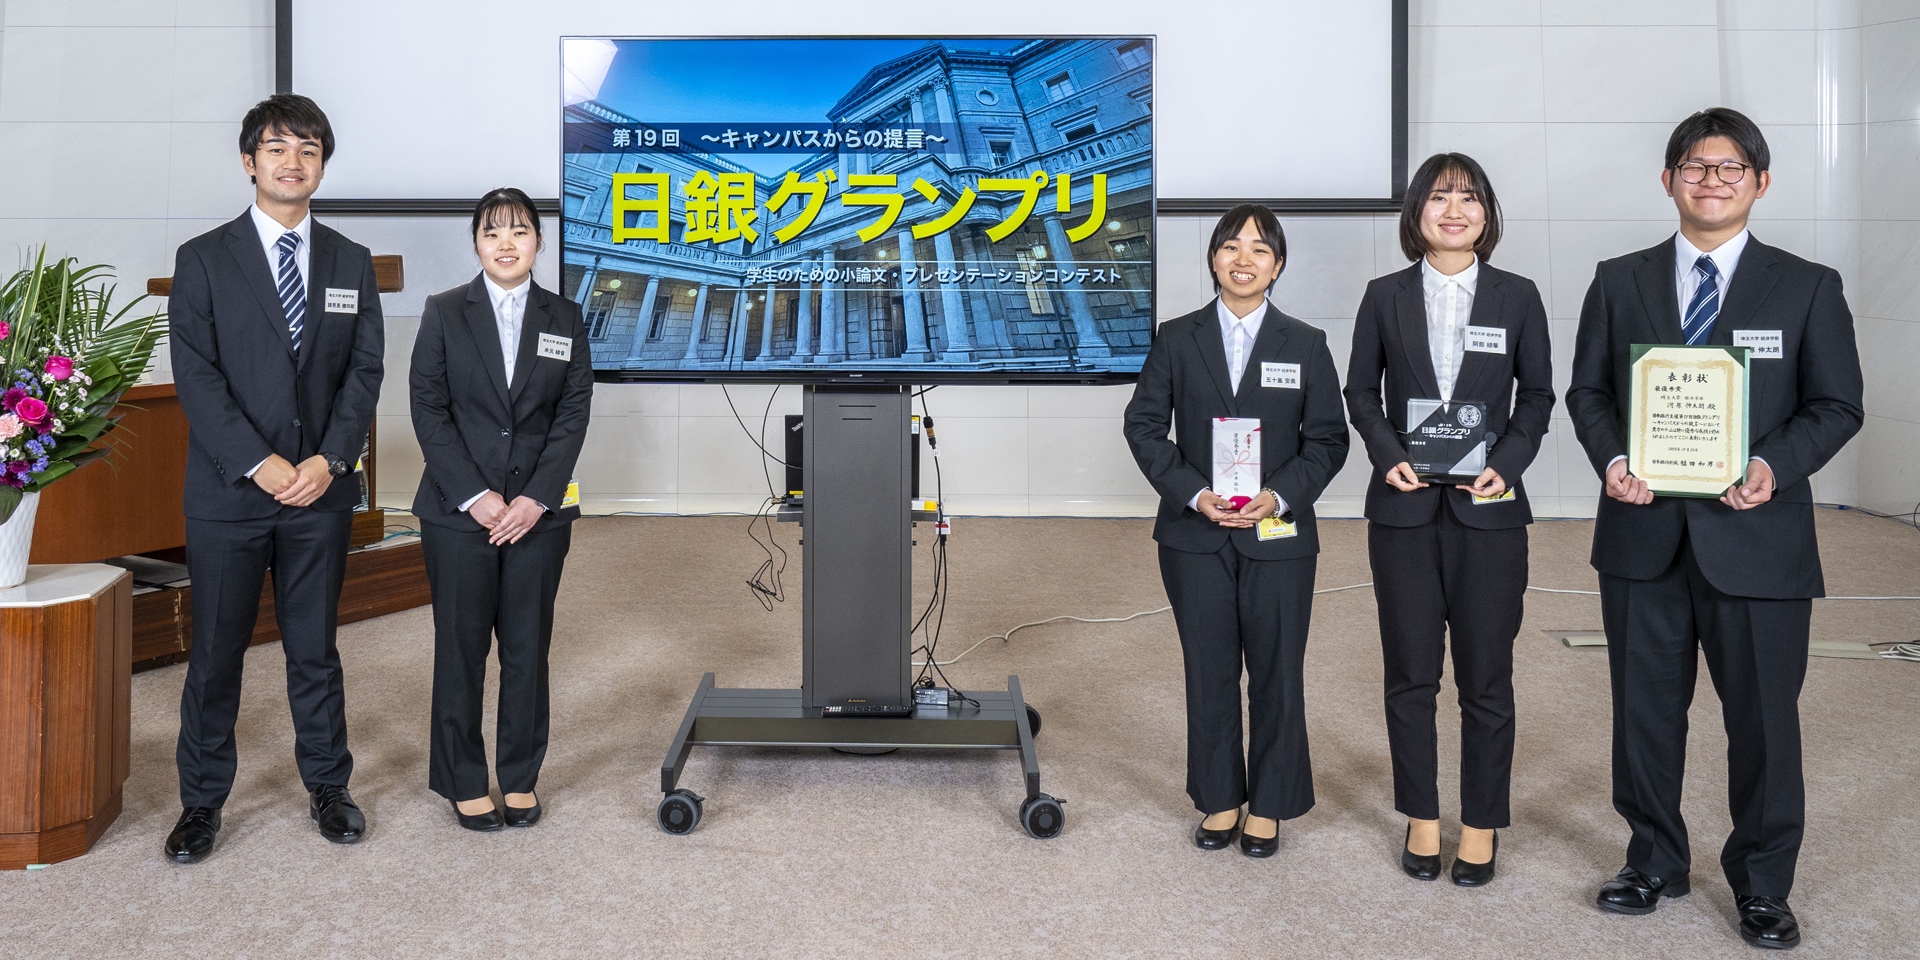 埼玉大学チームの学生5人が、横一列に起立して記念撮影している様子